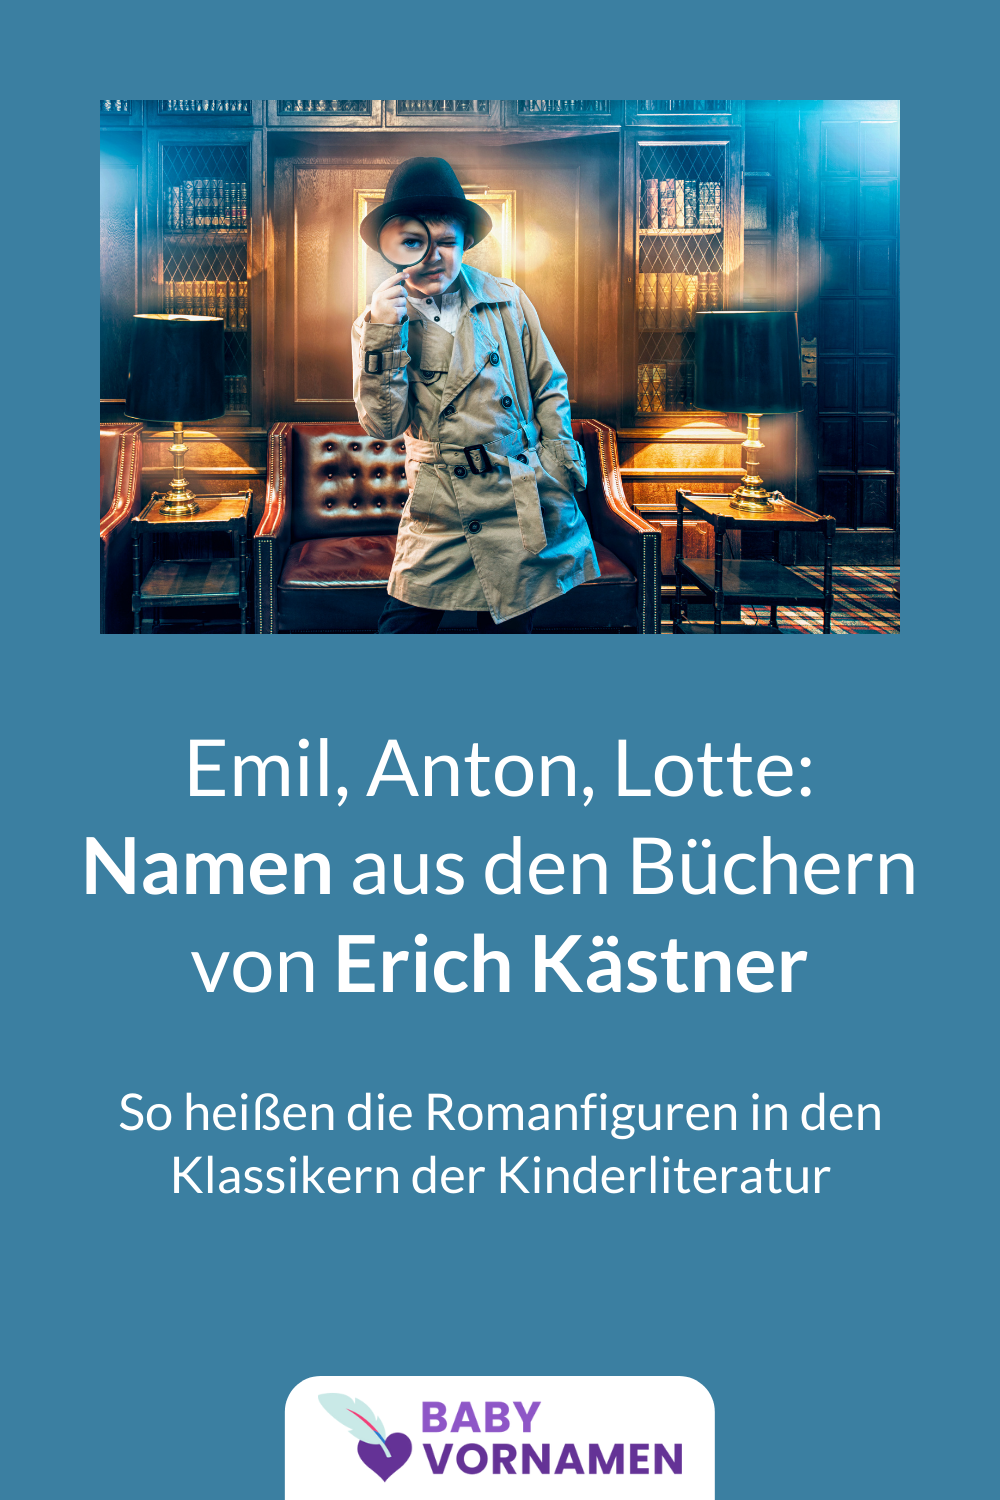 Vornamen aus Erich Kästner-Büchern